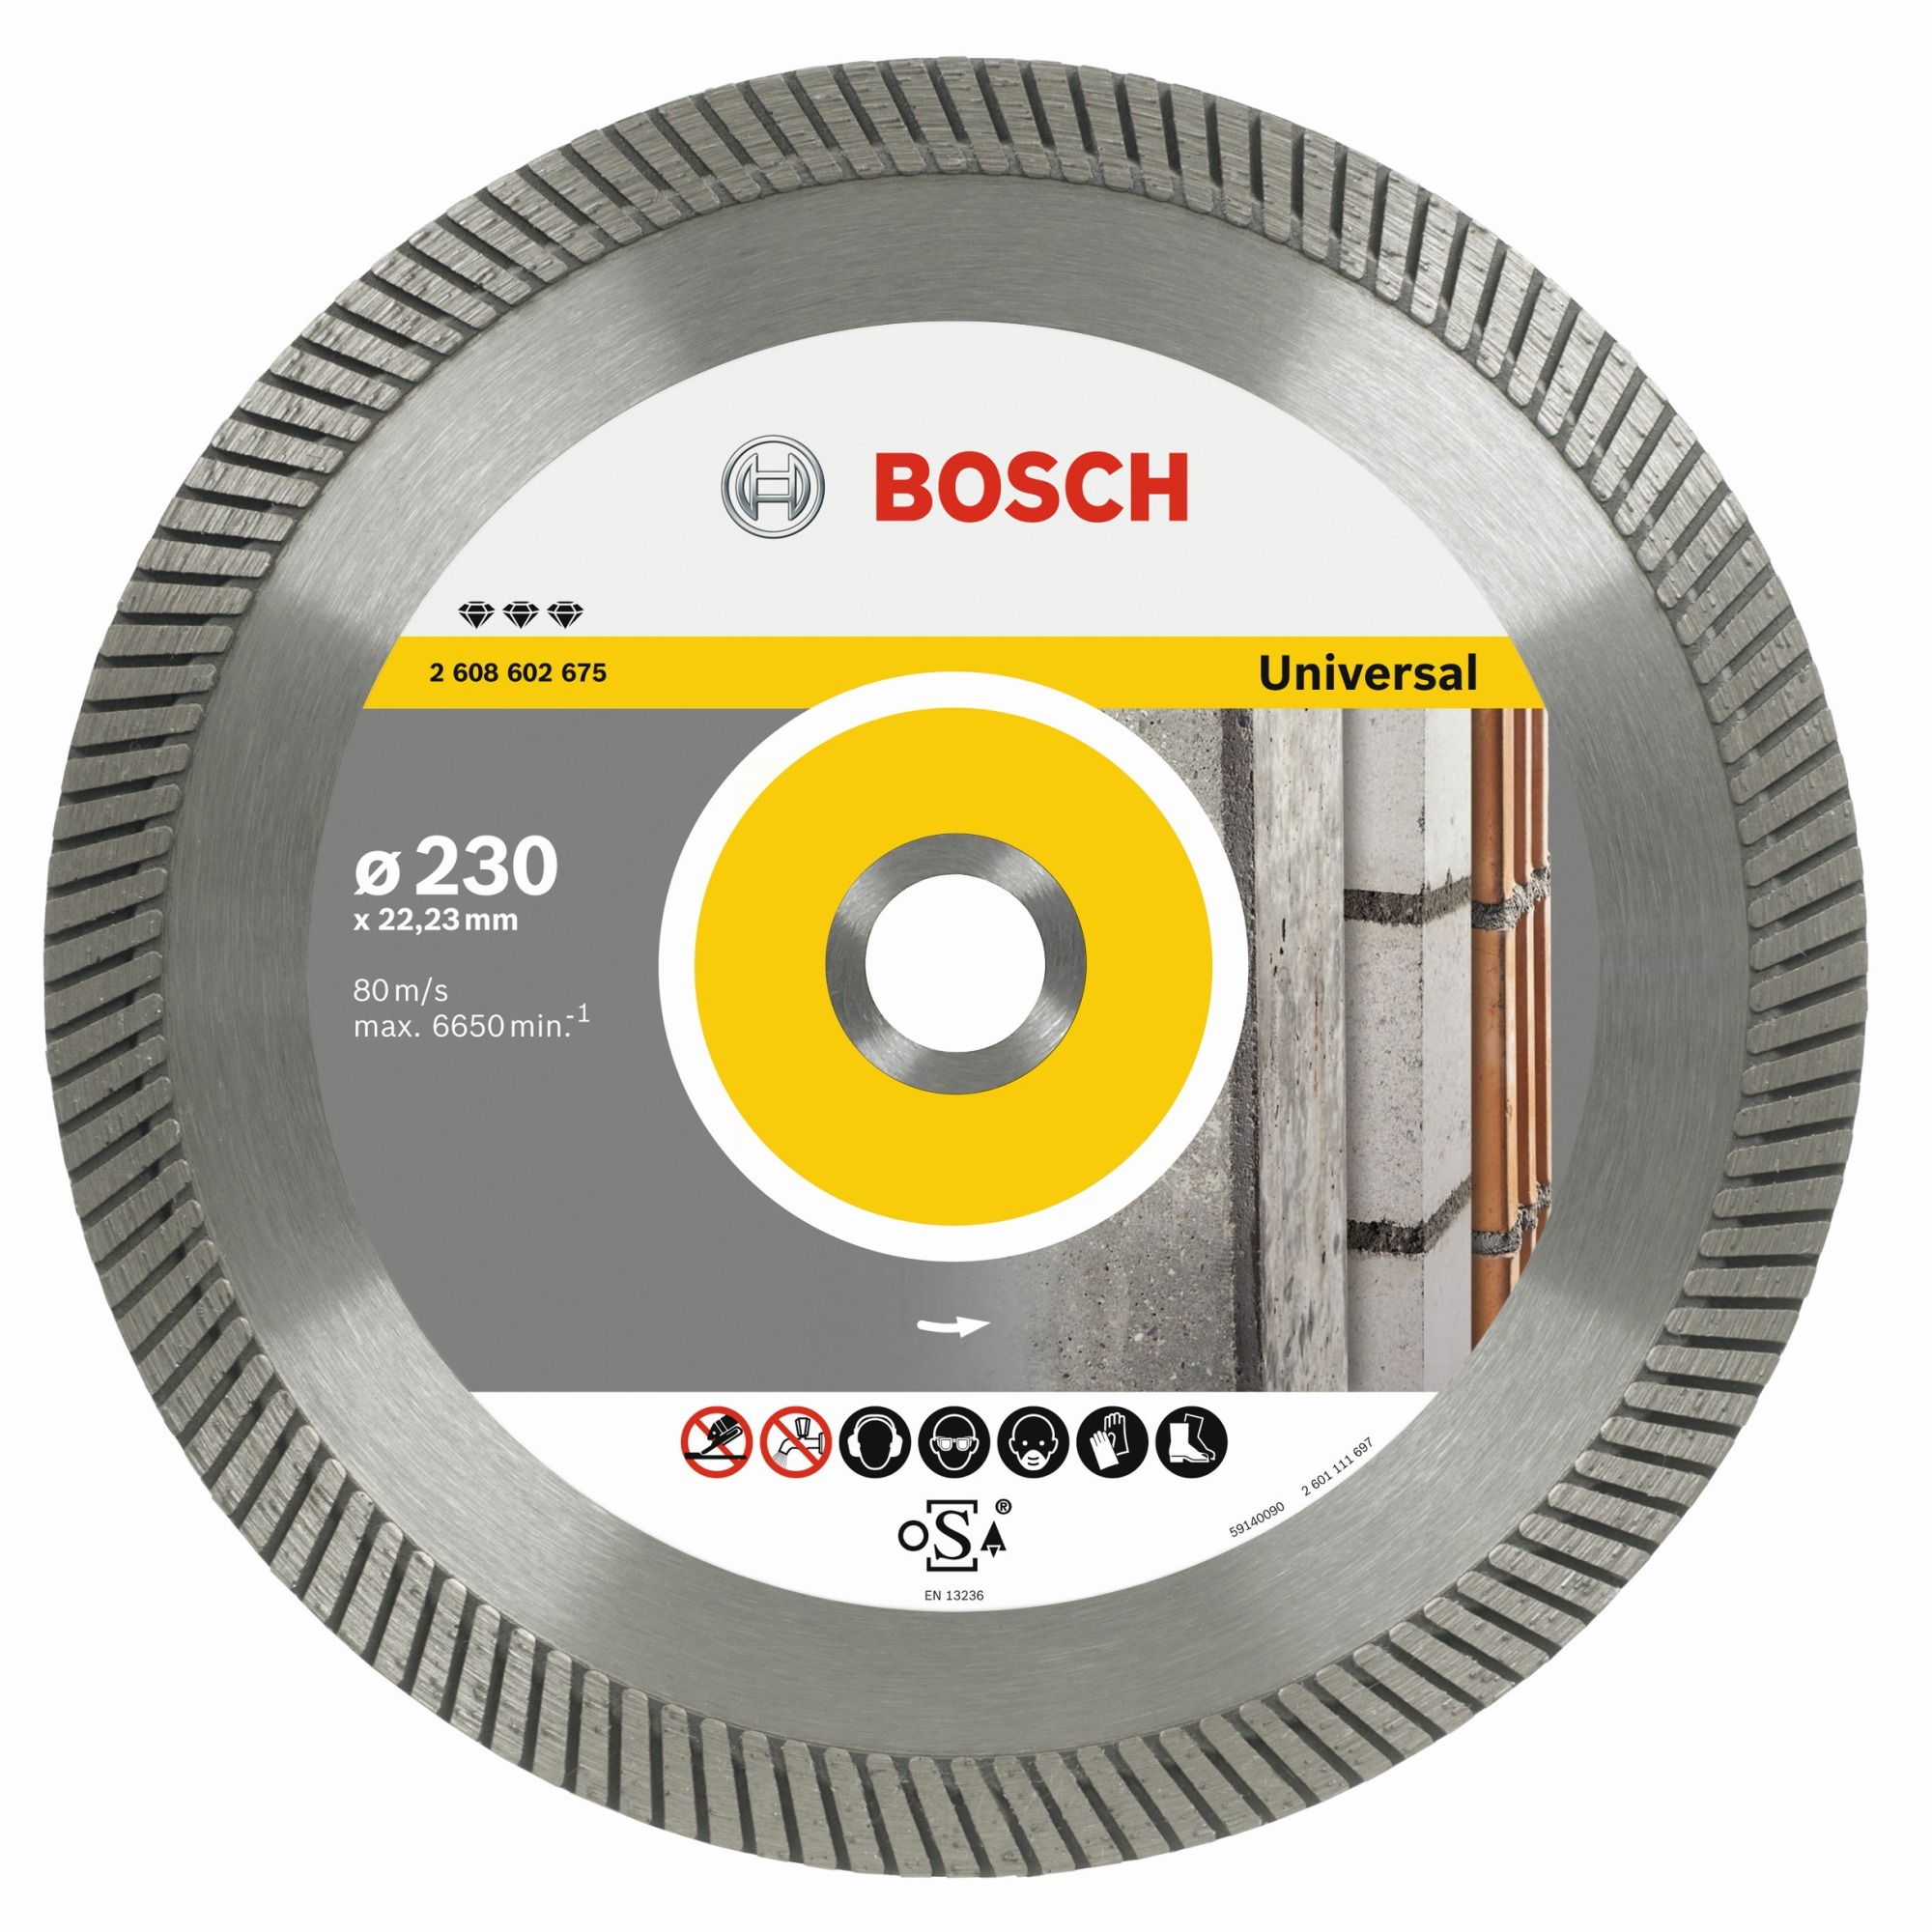 Bosch Diamantdoorslijpschijf Best for Universal Turbo 125 x 22